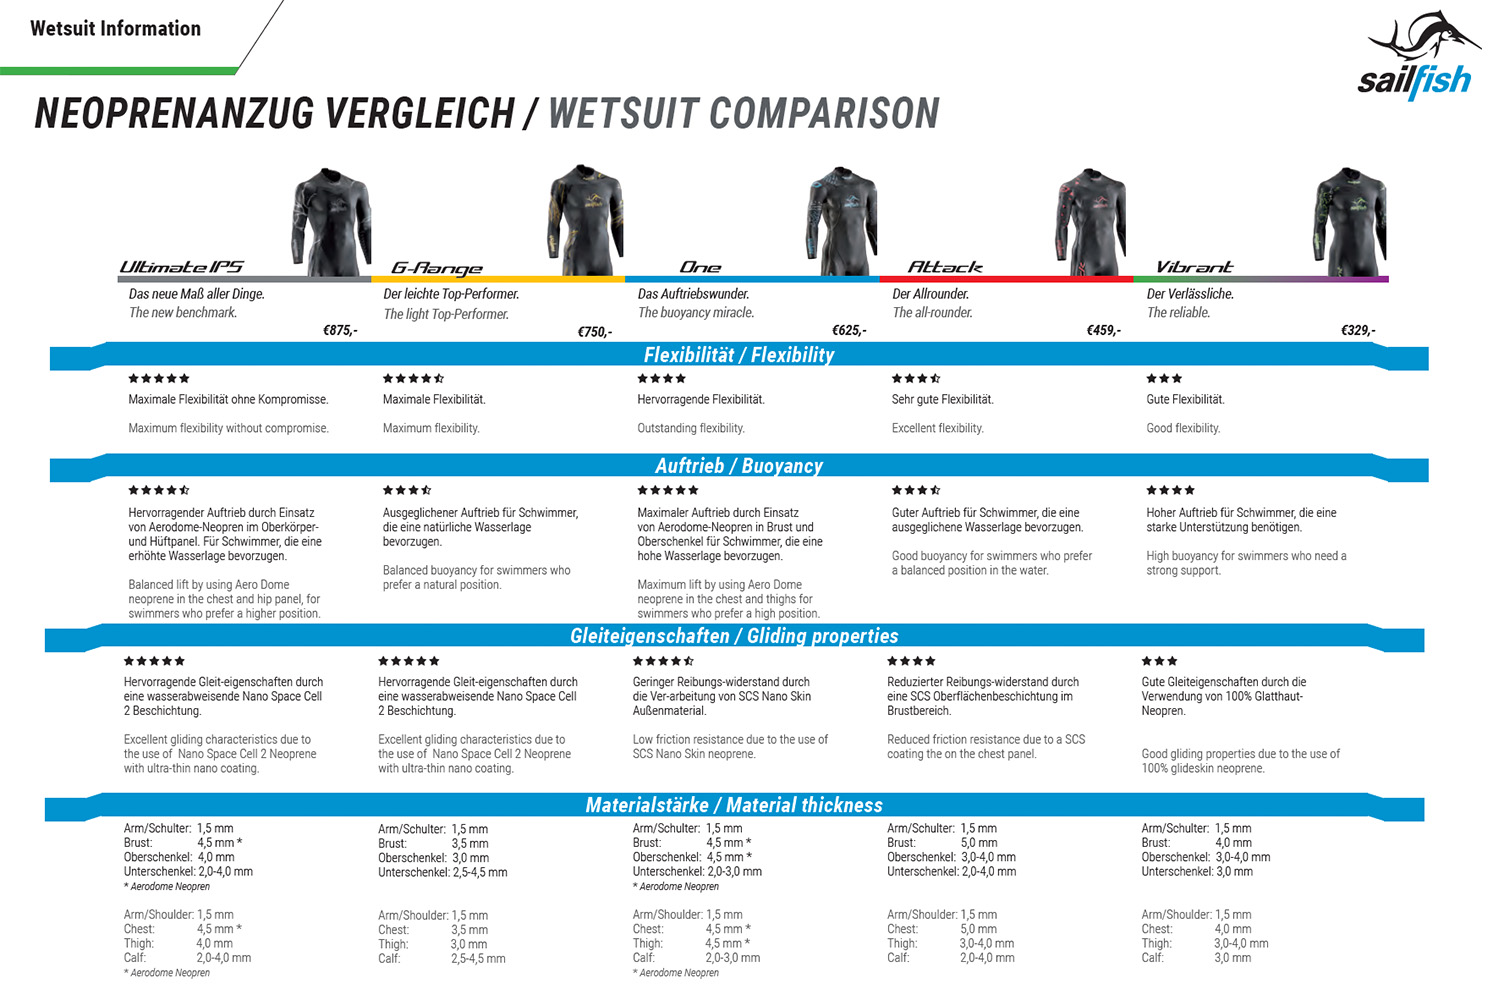 Sailfish Wetsuit Size Chart